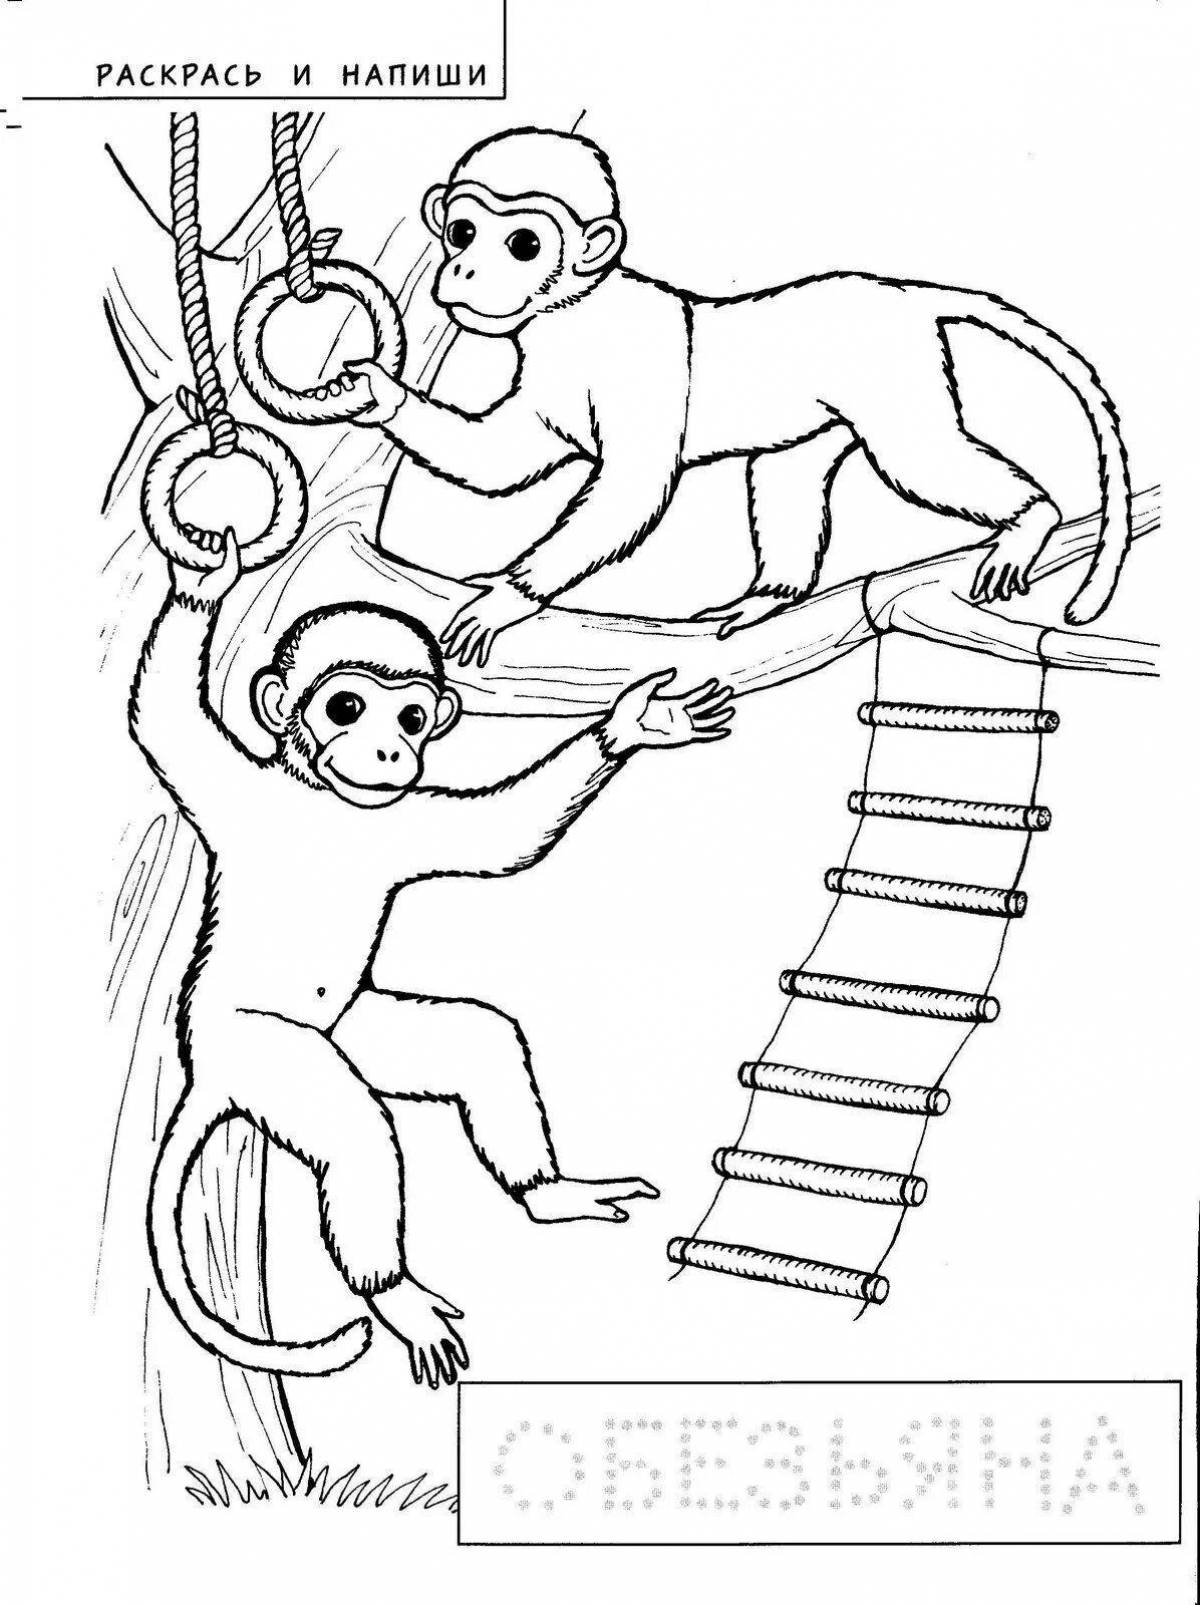 Тест по рассказу житкова обезьянка. Раскраска к произведению про обезьянку. Про обезьянку Житков раскраска. Раскраска к произведению Житкова про обезьянку. Иллюстрация к произведению про обезьянку.